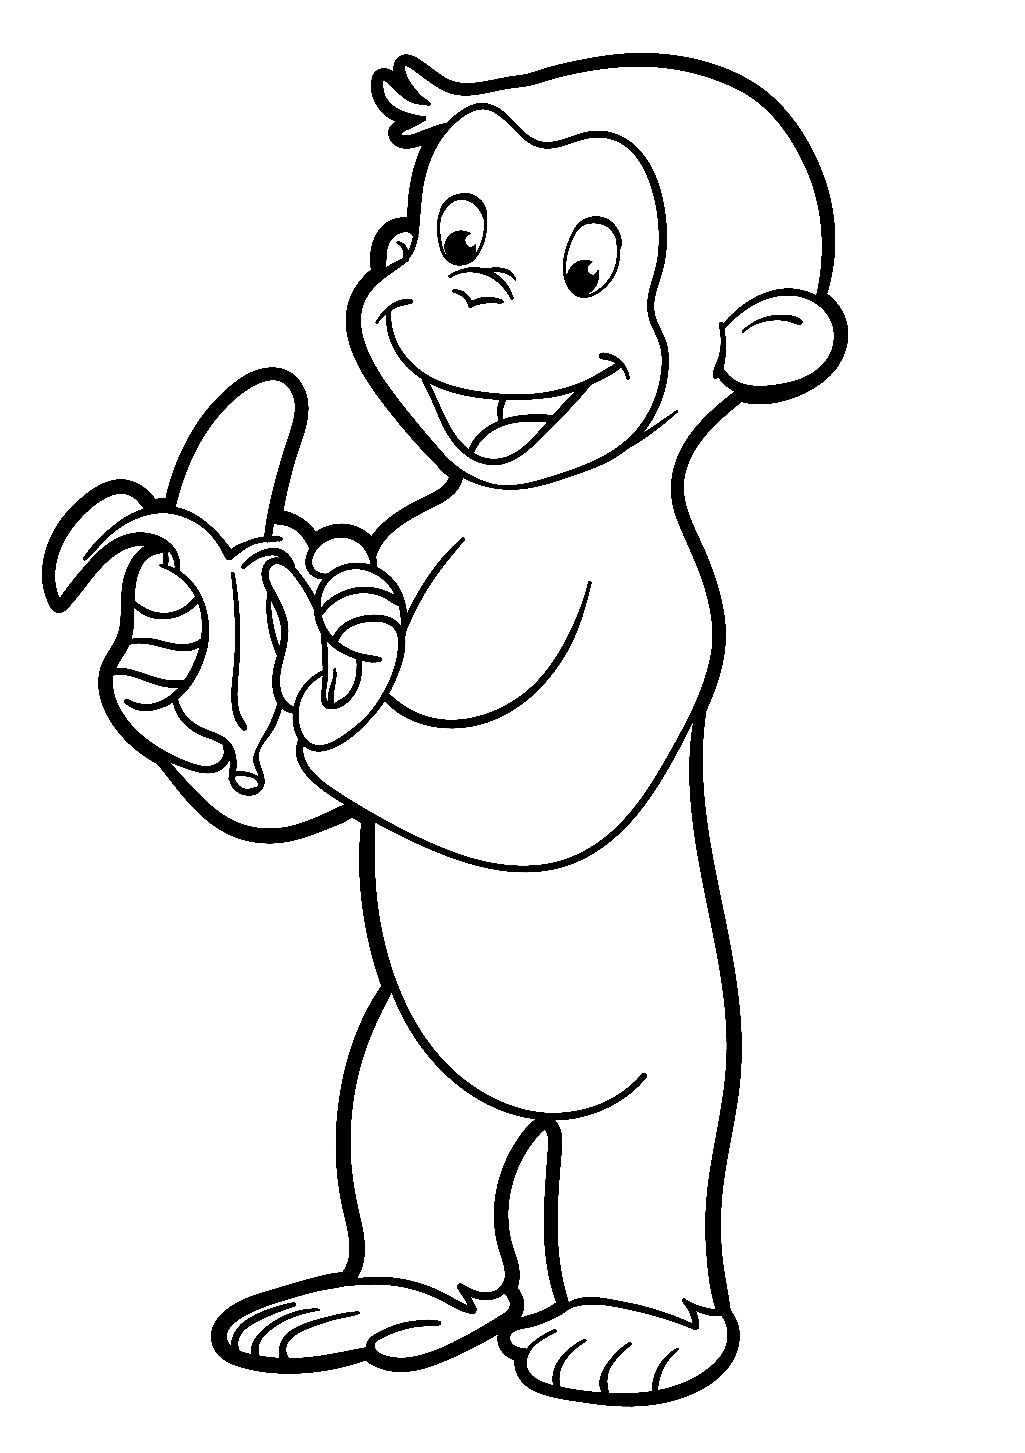 Dibujo para colorear de George comiendo un plátano